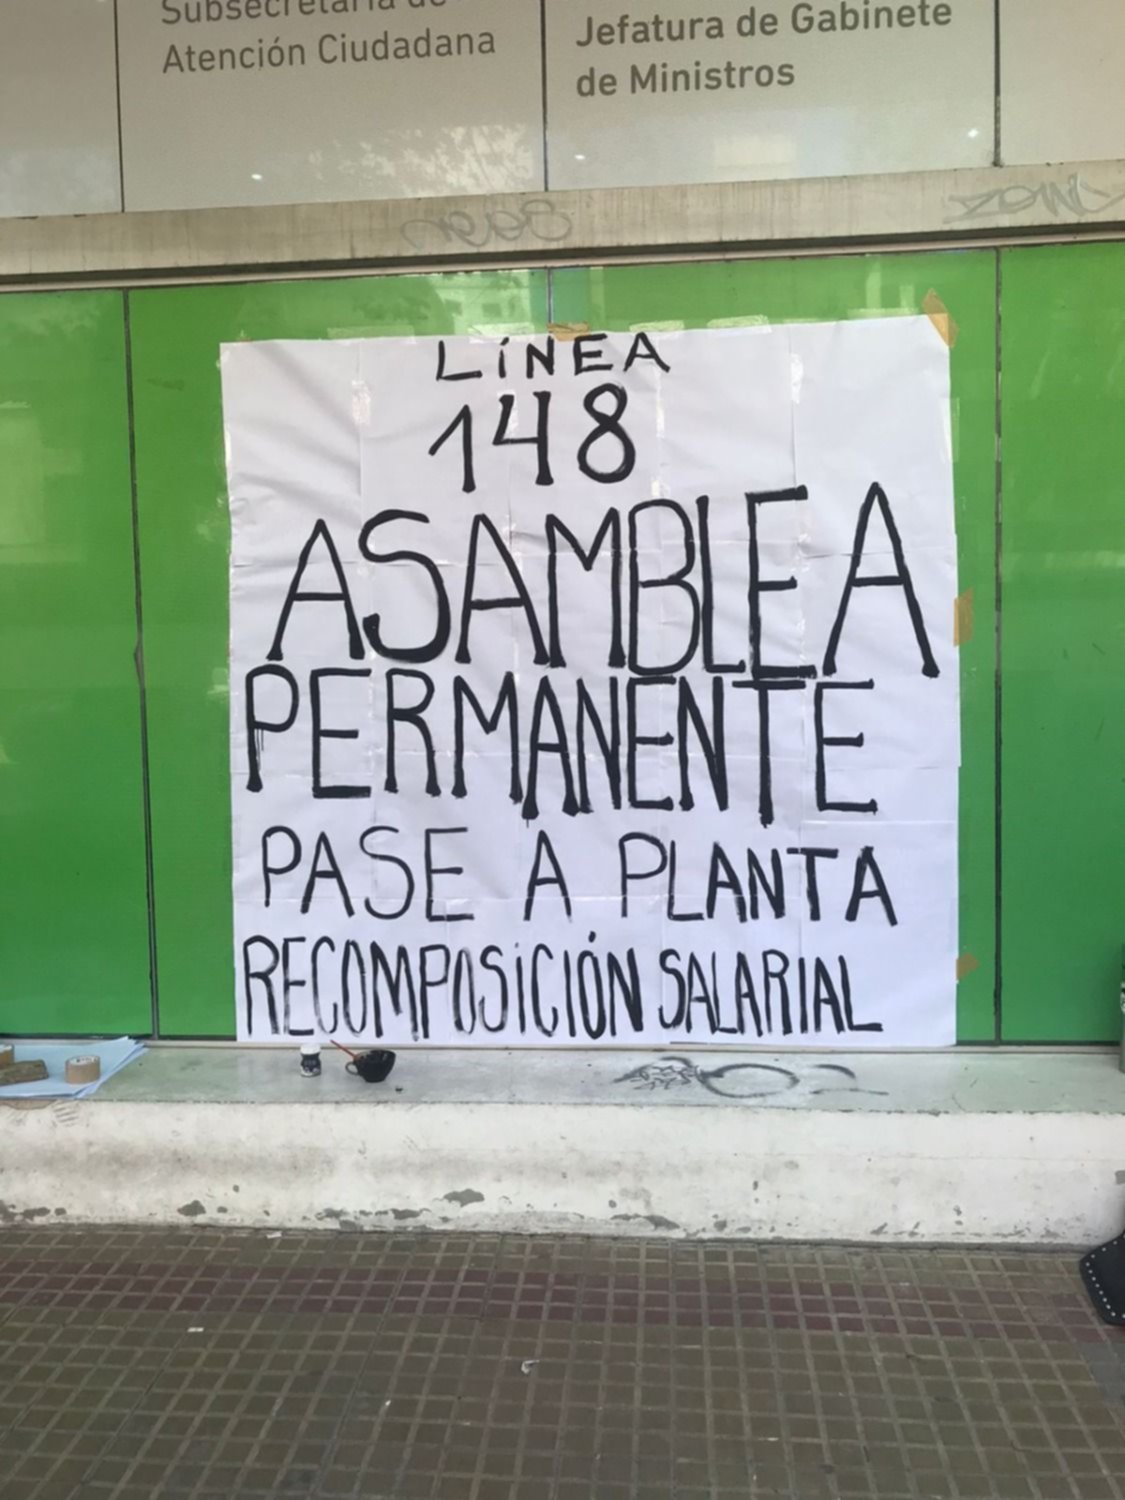 Asamblea y protesta en la Línea 148 por mejores condiciones salariales y laborales